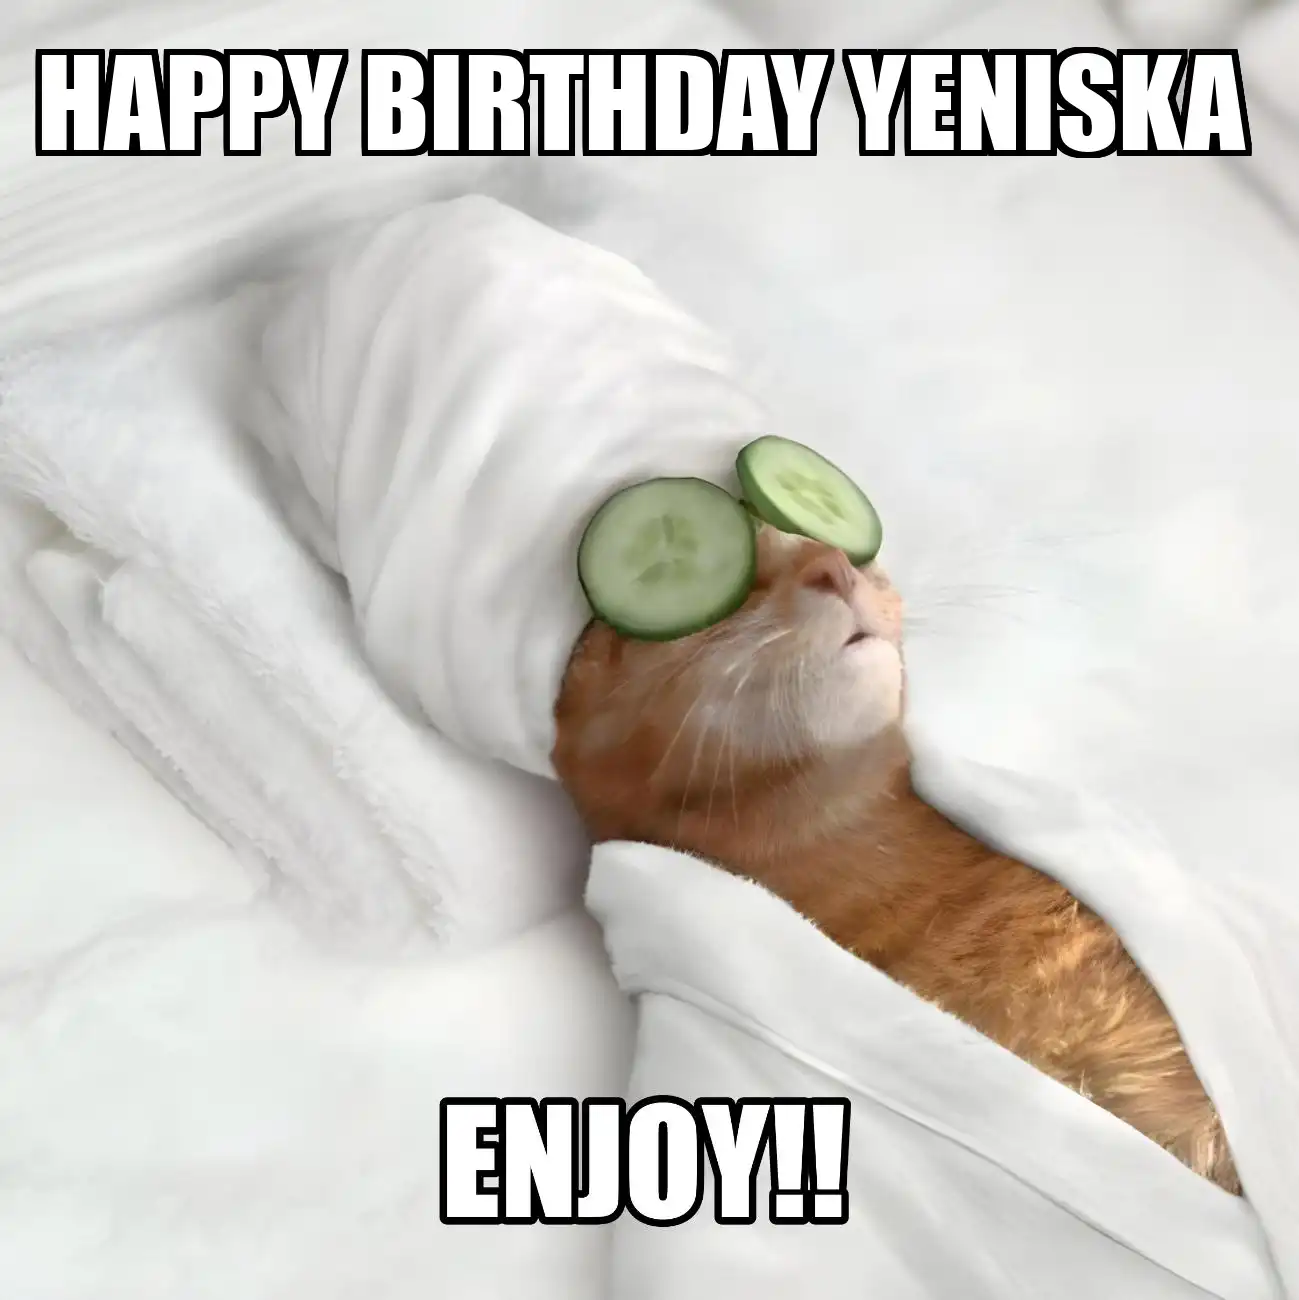 Happy Birthday Yeniska Enjoy Cat Meme